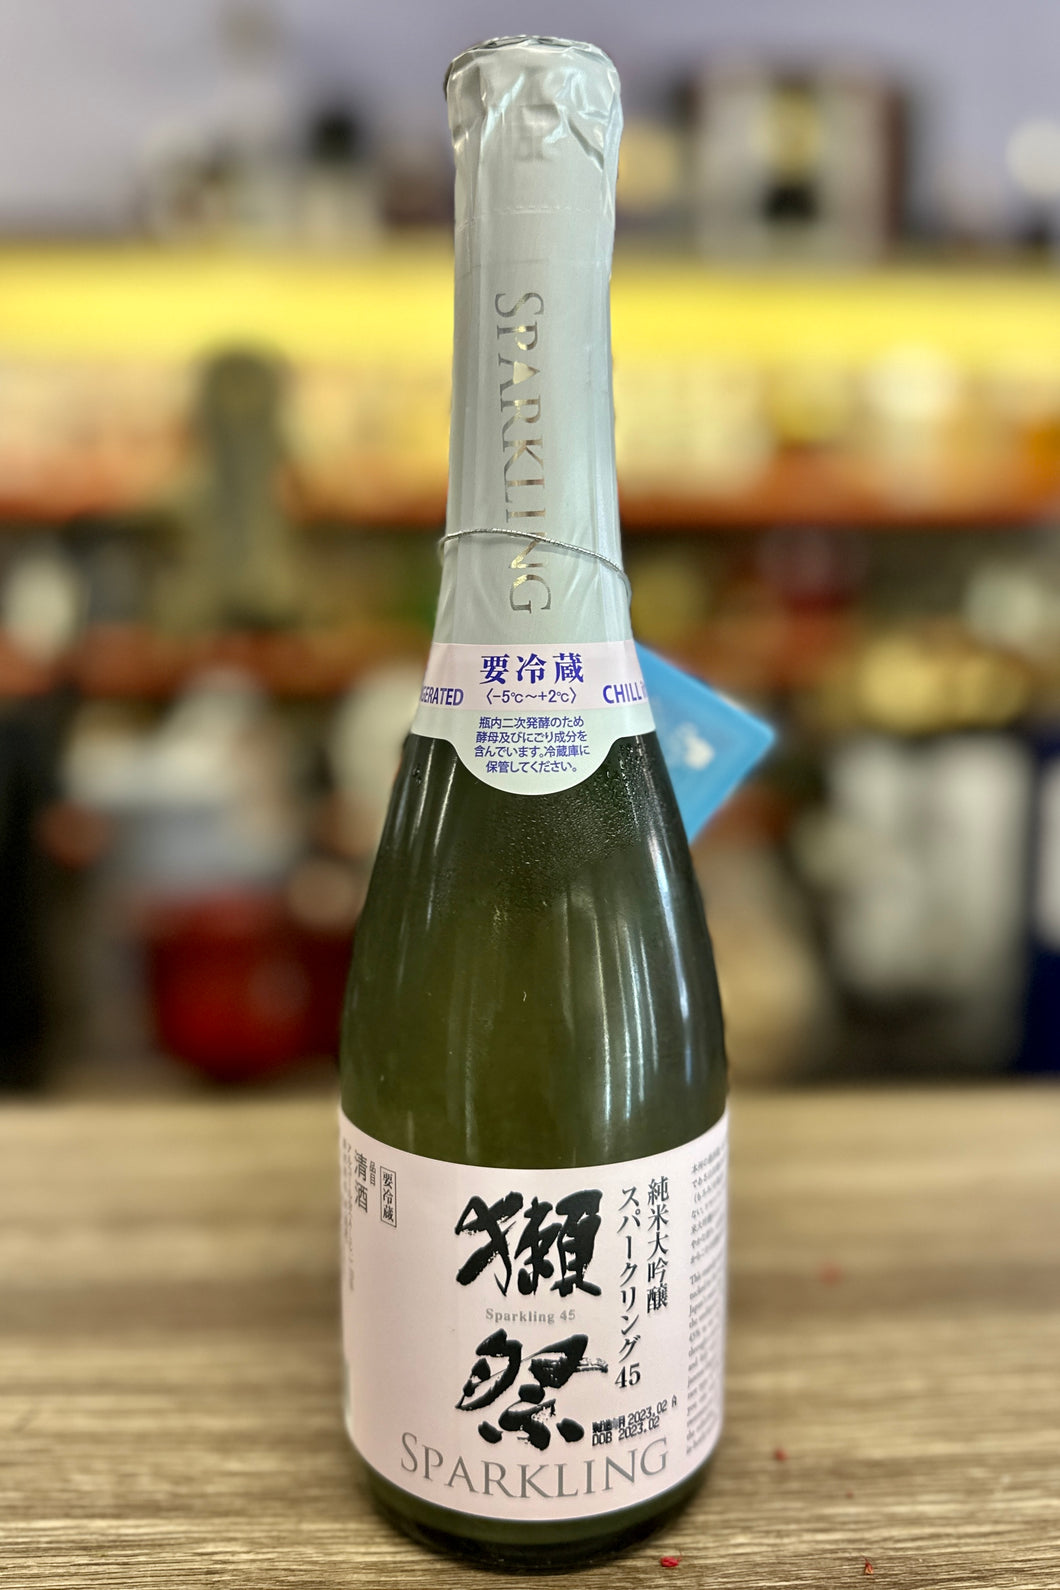 Asahi Shuzo Dassai '45' Junmai Daiginjo Sparkling Sake, 360 ml